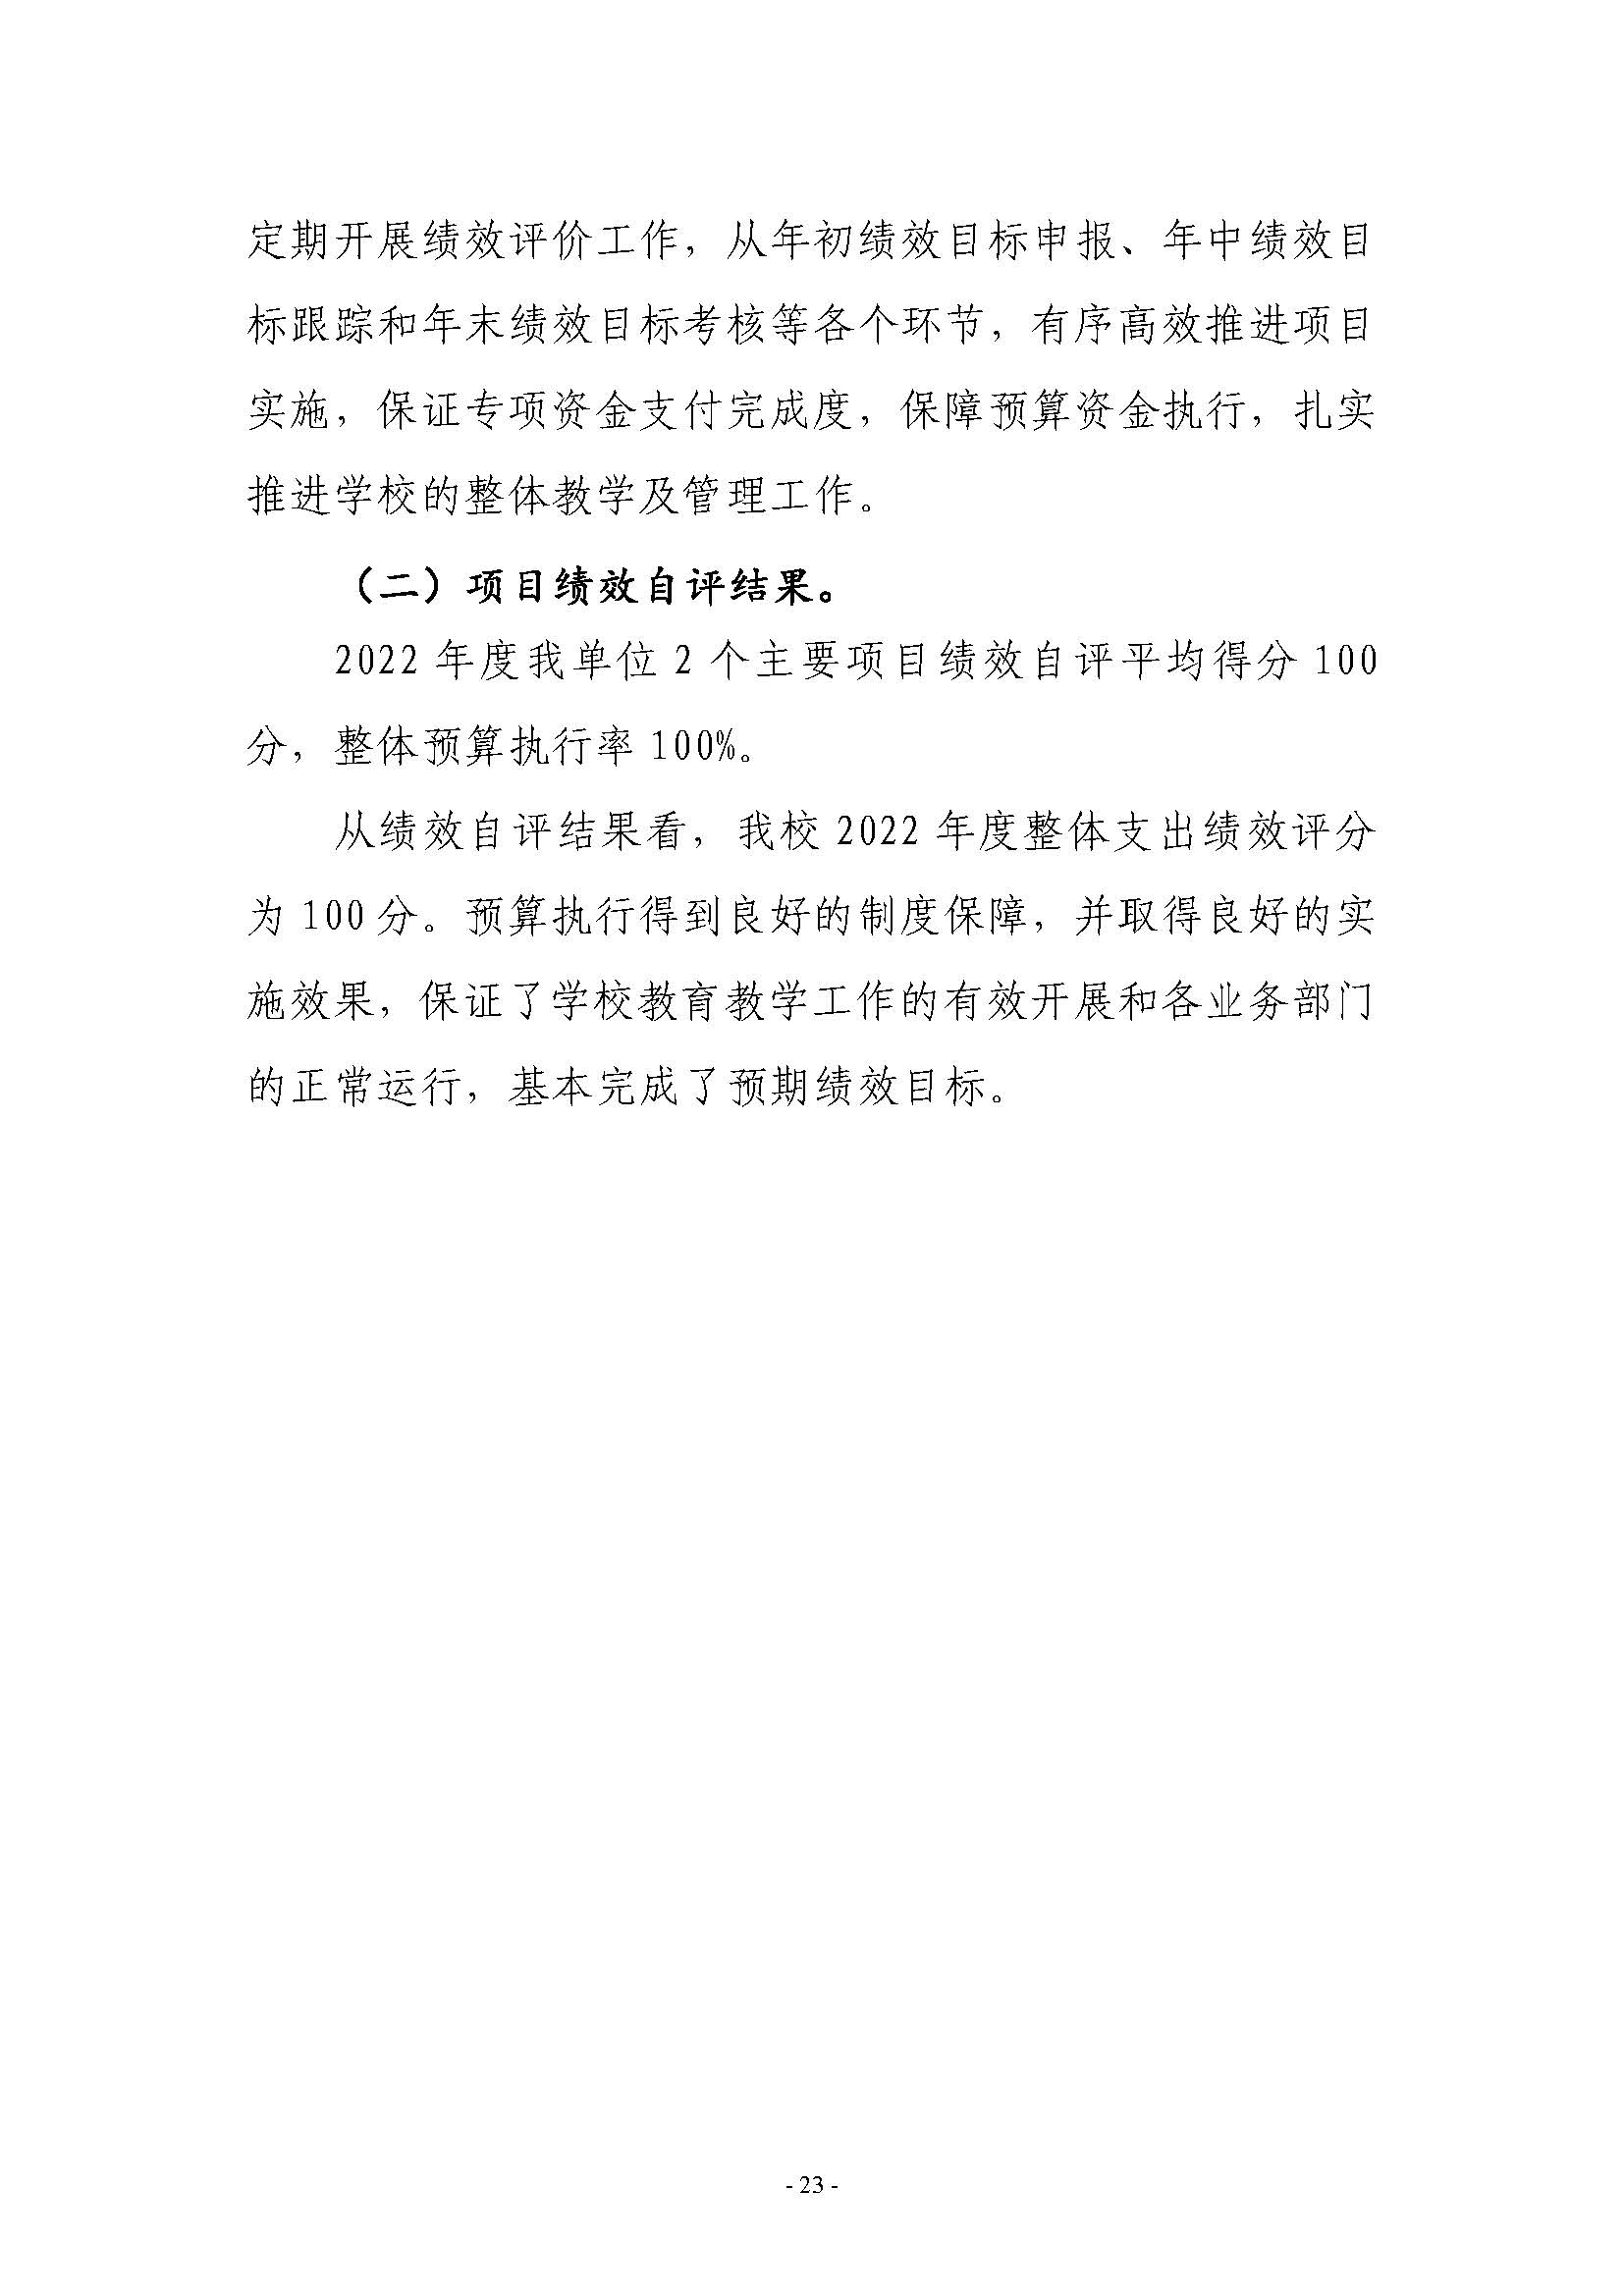 2022年度郑州市第四十一高级中学决算_页面_23.jpg